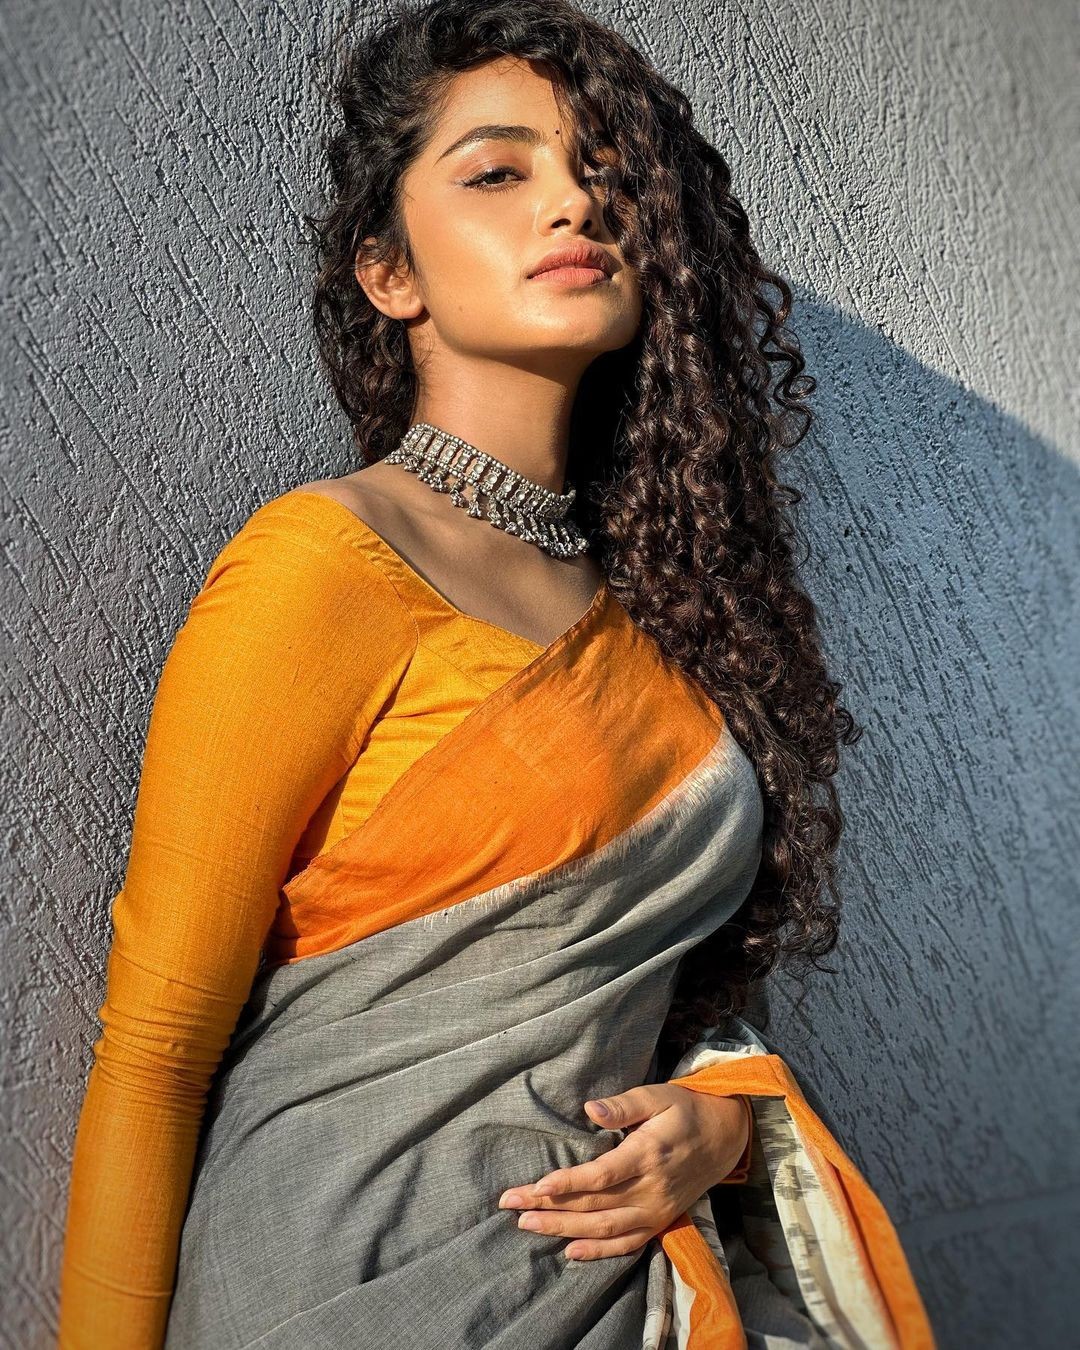 Stunning Anupama Parameswaran